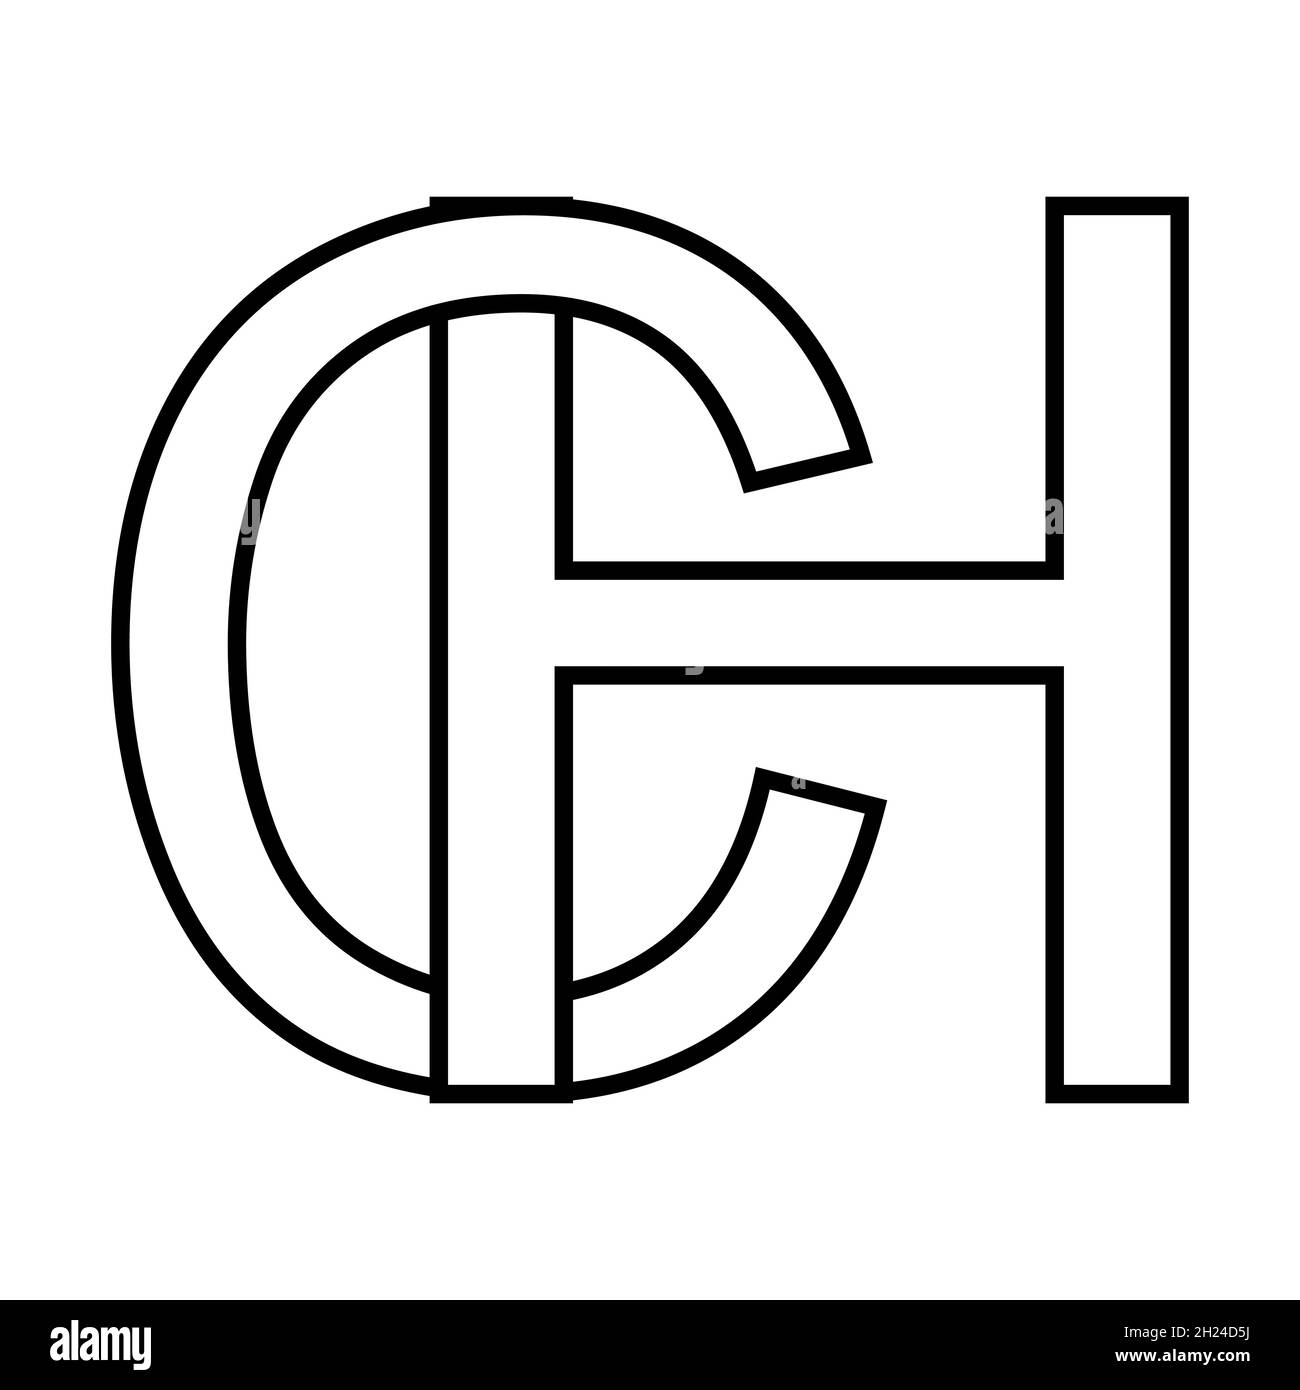 Logo-Zeichen hc ch Symbol Zeichen Zeilensprungbuchstaben c g Logo hc, ch erste Großbuchstaben Muster Alphabet h, c Stock Vektor